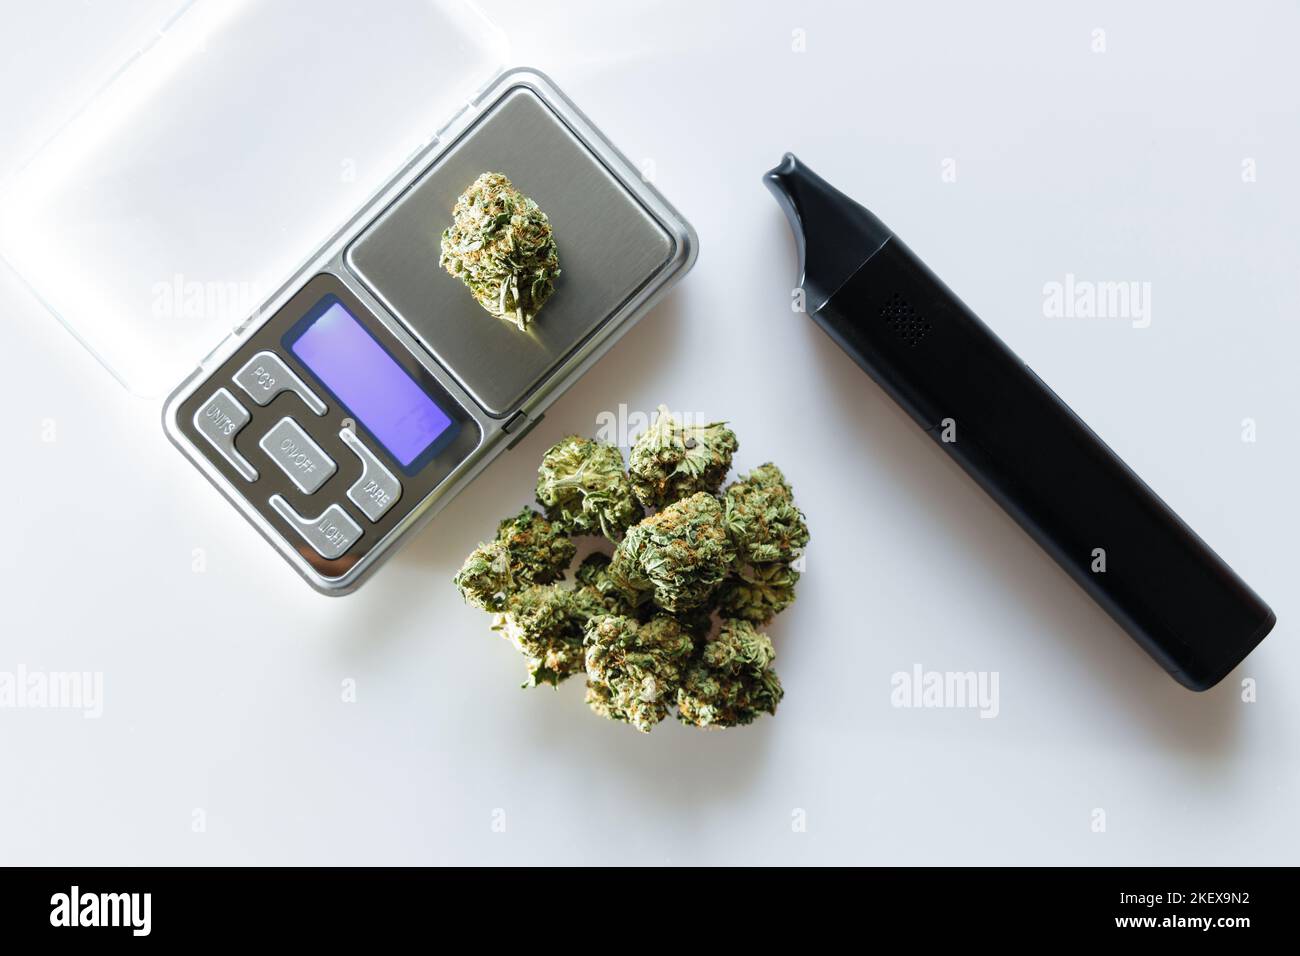 FLOS di cannabis, mucchio di marijuana medica accanto al vaporizzatore e scala di precisione, modo sicuro per prendere la medicina Foto Stock